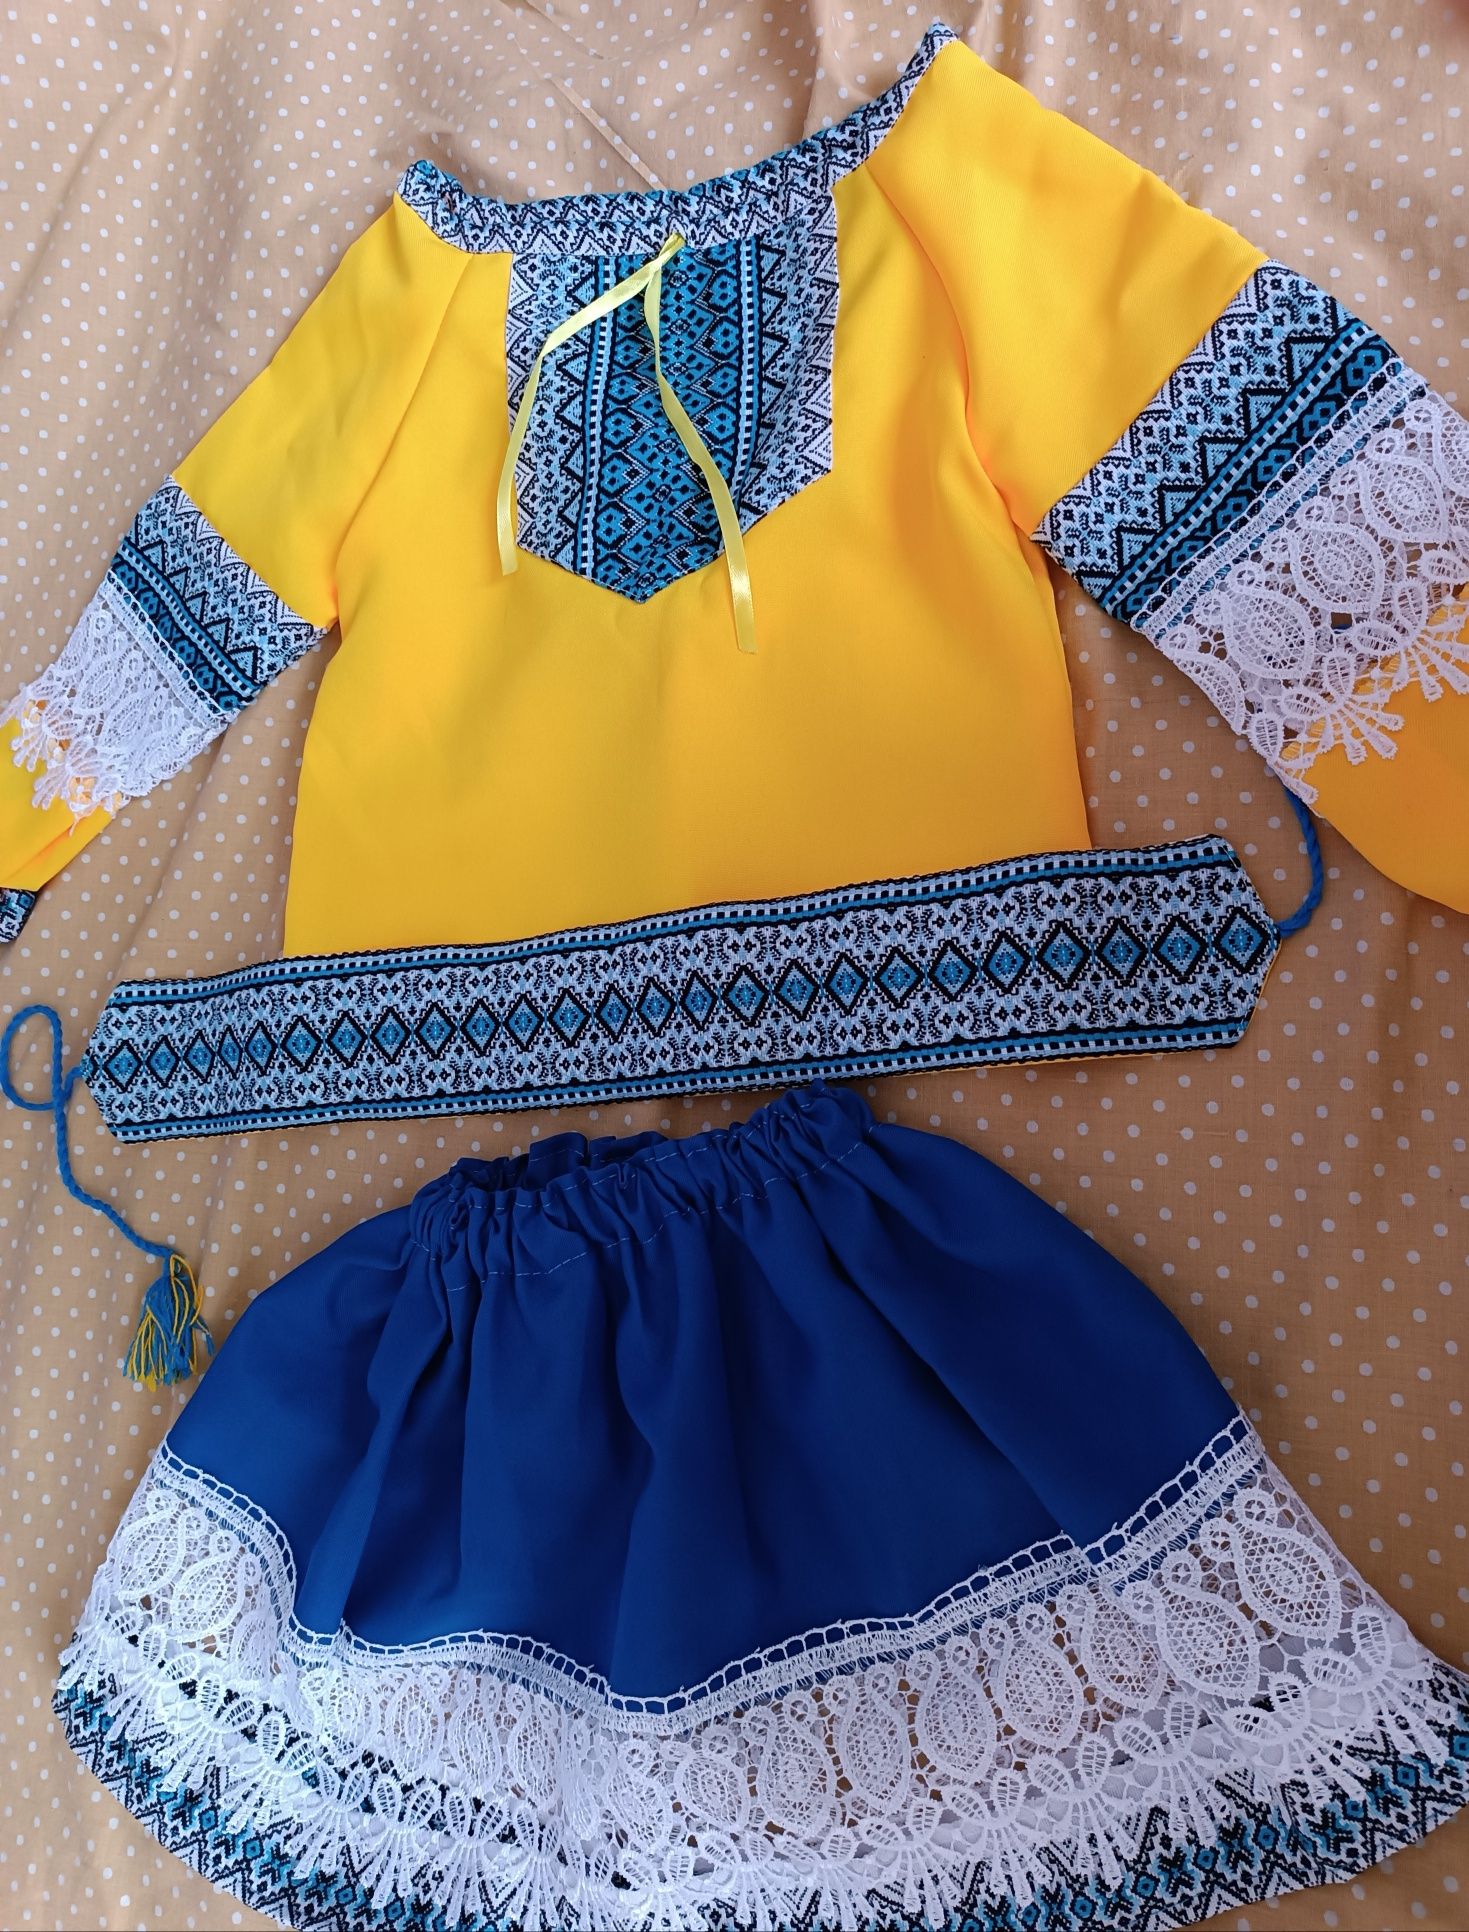 Український костюм для дівчинки